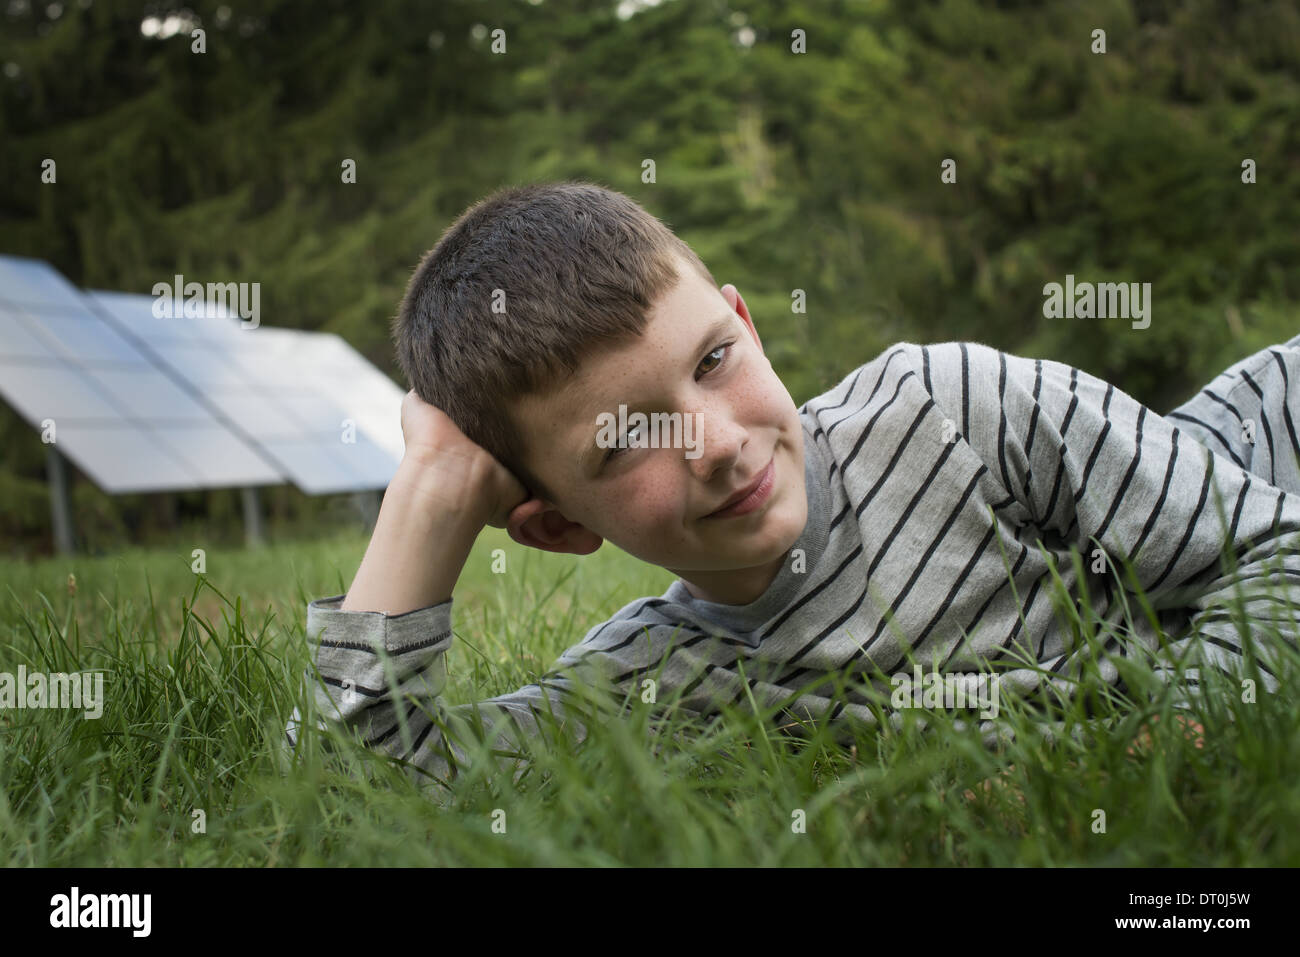 Woodstock New York STATI UNITI D'AMERICA ragazzo disteso nel prato accanto a pannelli solari Foto Stock